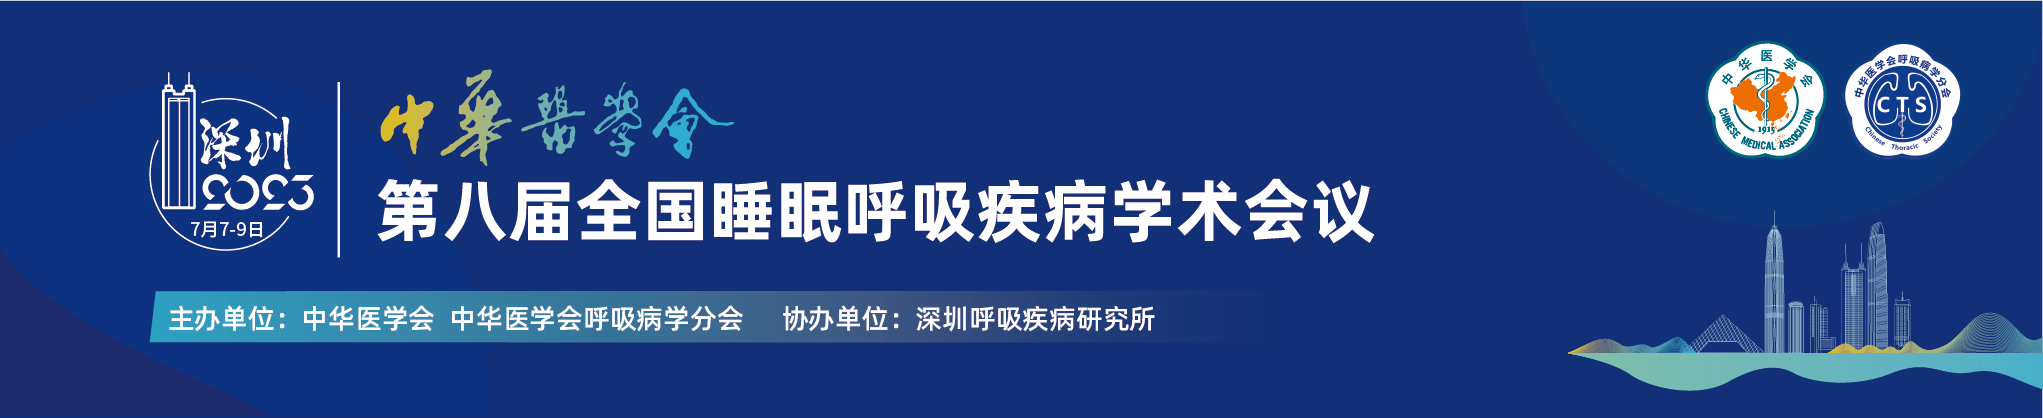 中华医学会第八届全国睡眠呼吸疾病学术会议